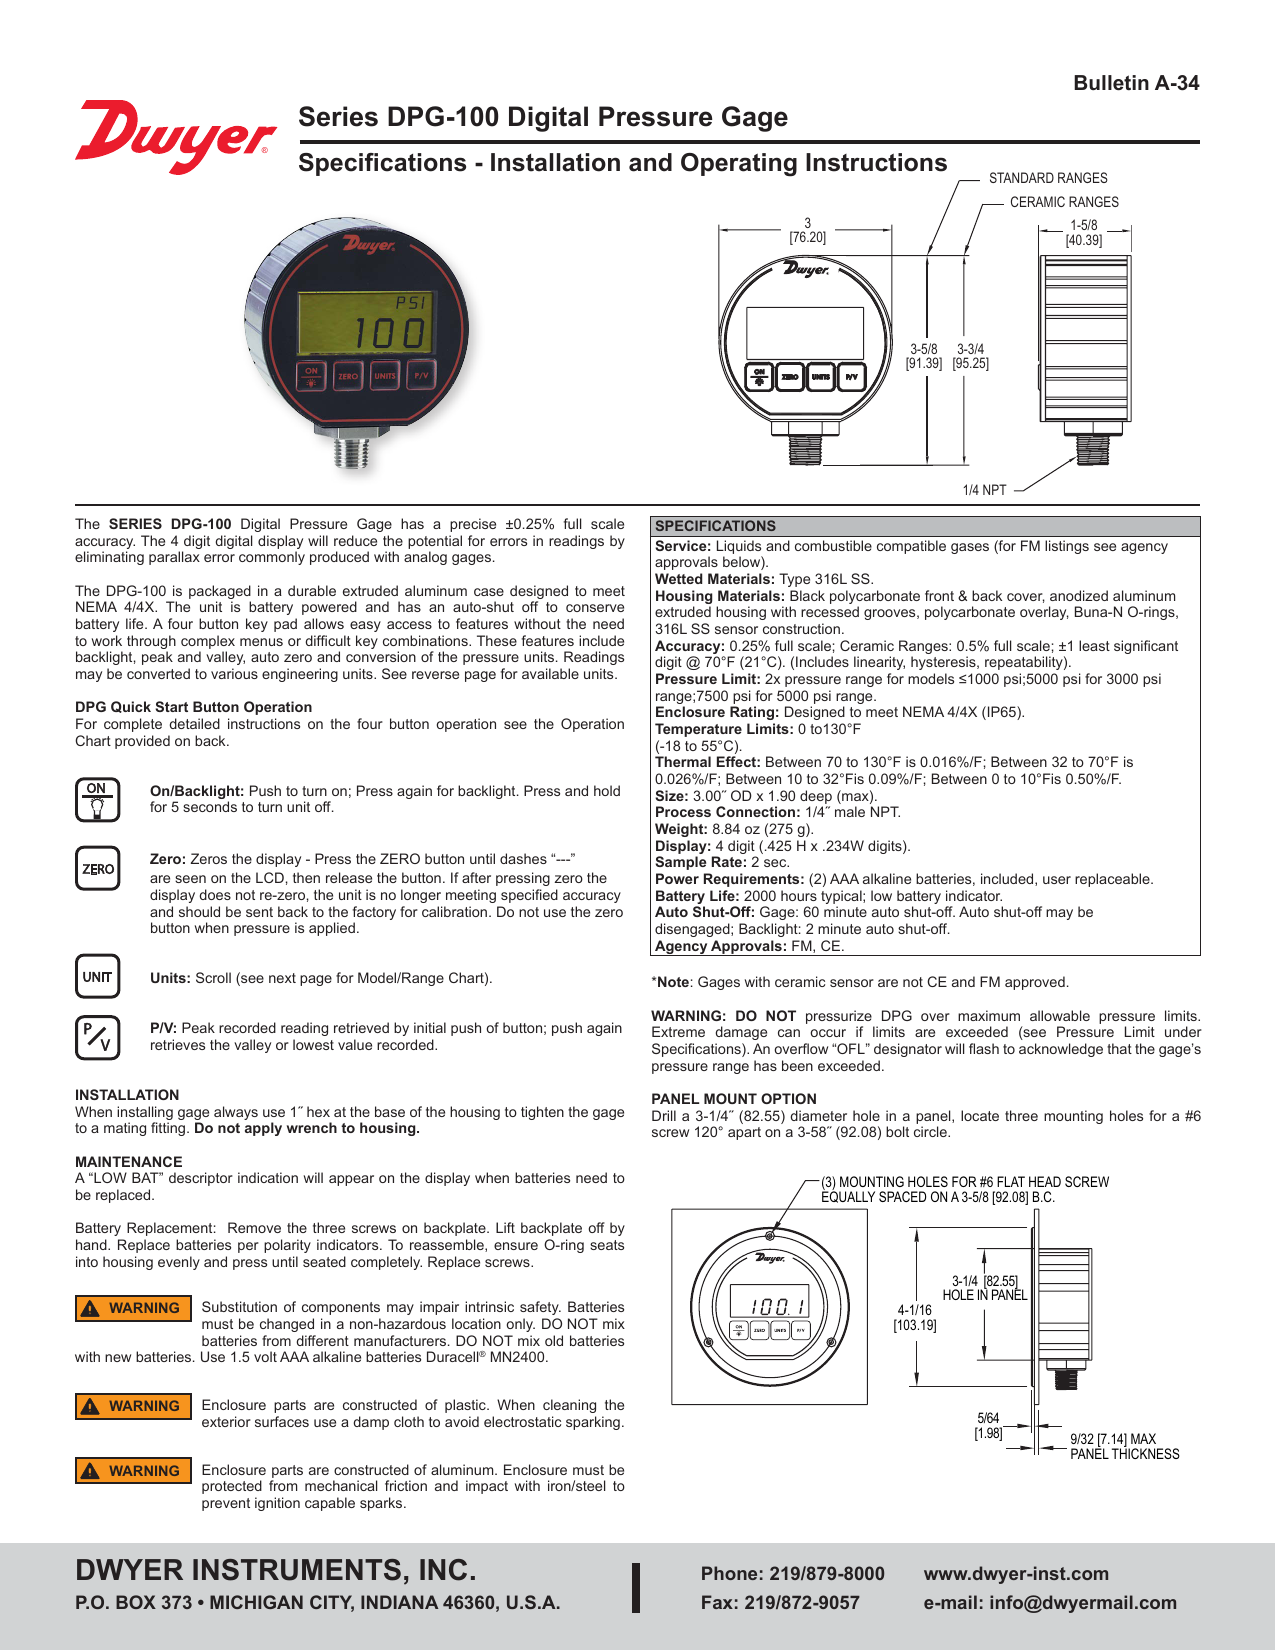 1/4 In Mnpt, Dwyer Instruments Dpg-109 Digital Pressure Gauge 0 To 1000 Psi 